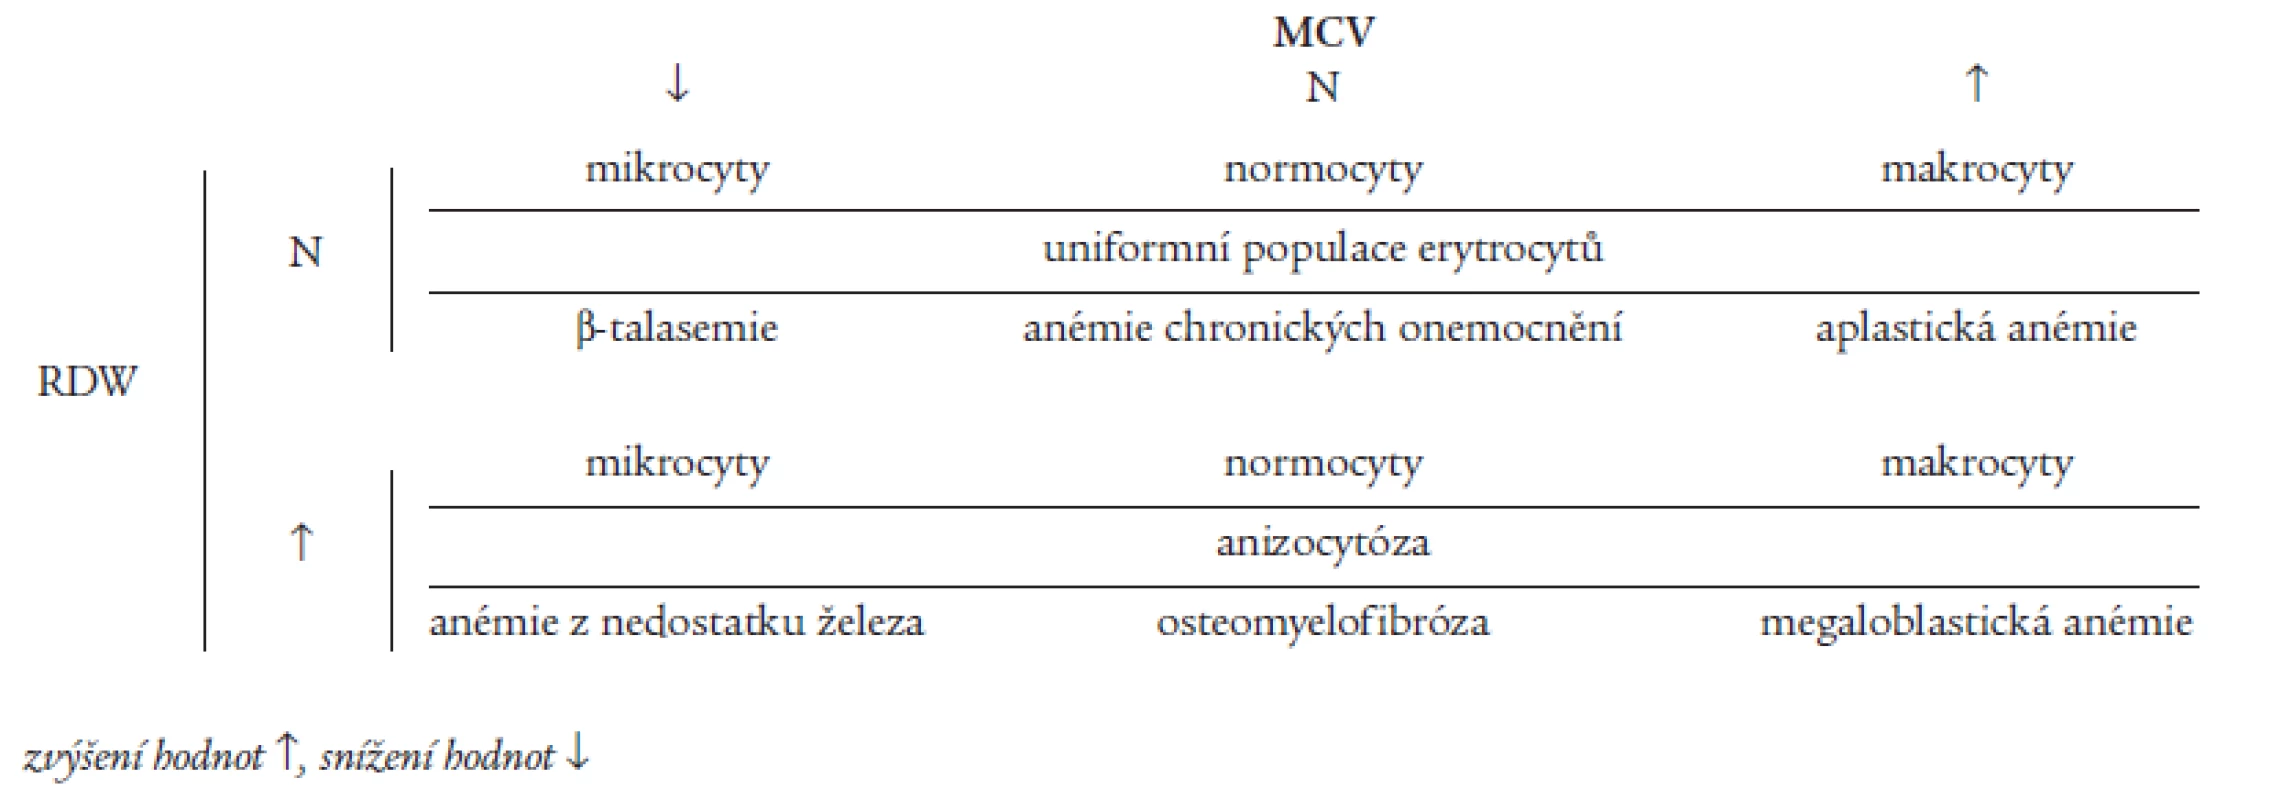 Hodnocení anémií dle MCV (střední objem erytrocytů) a RDW (distribuční šíře erytrocytů).